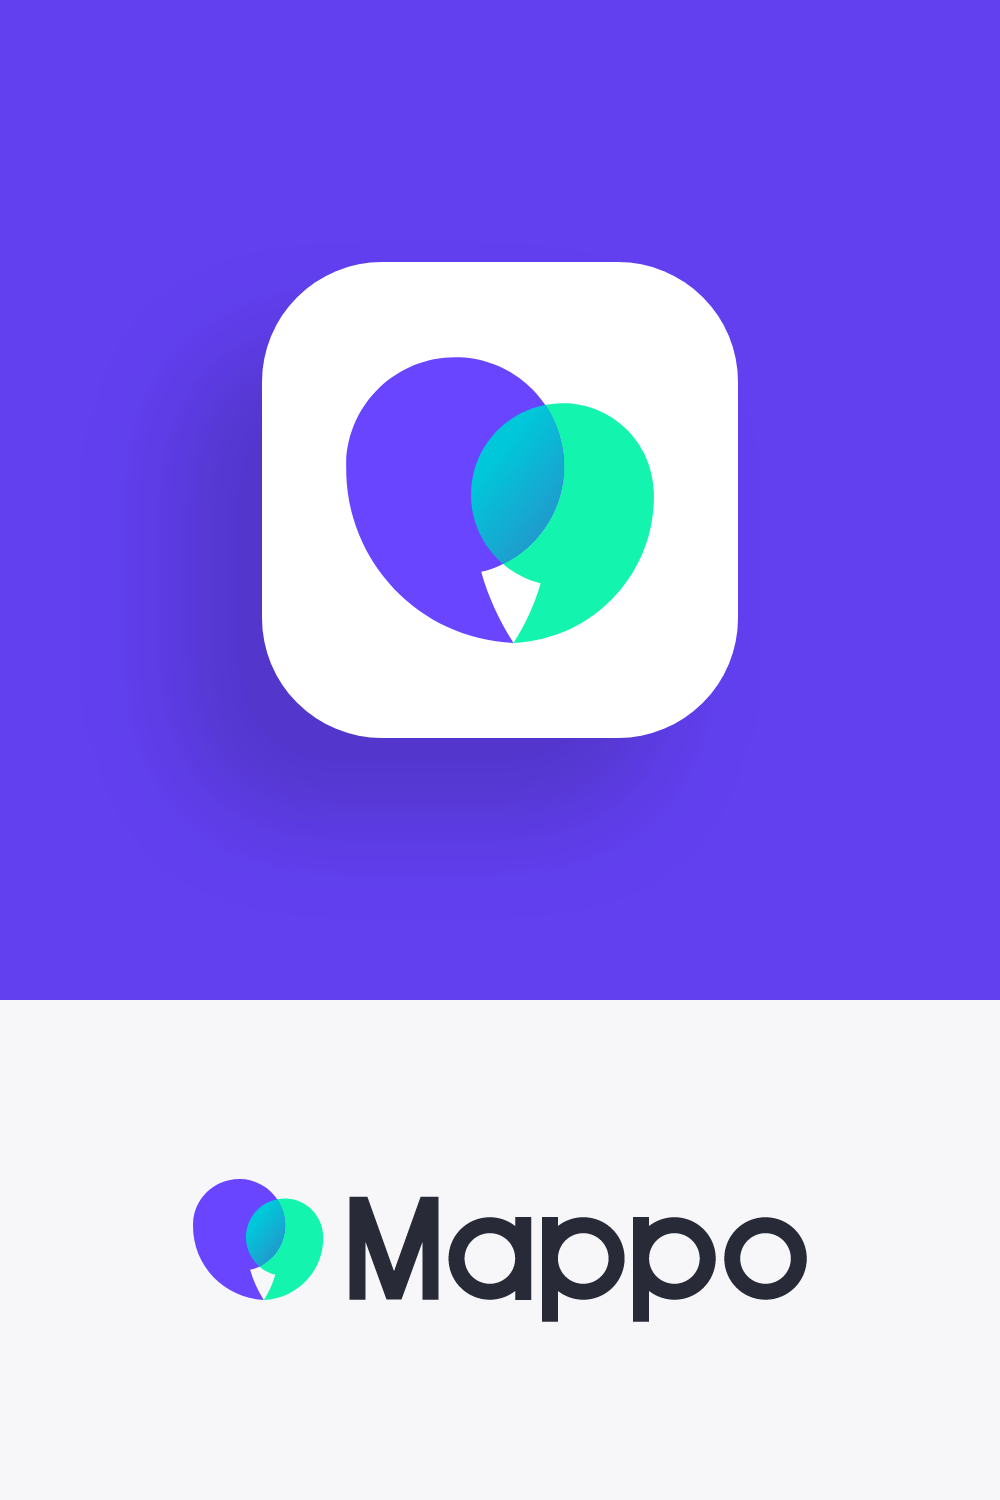 Mappo culture travel app icon and logo